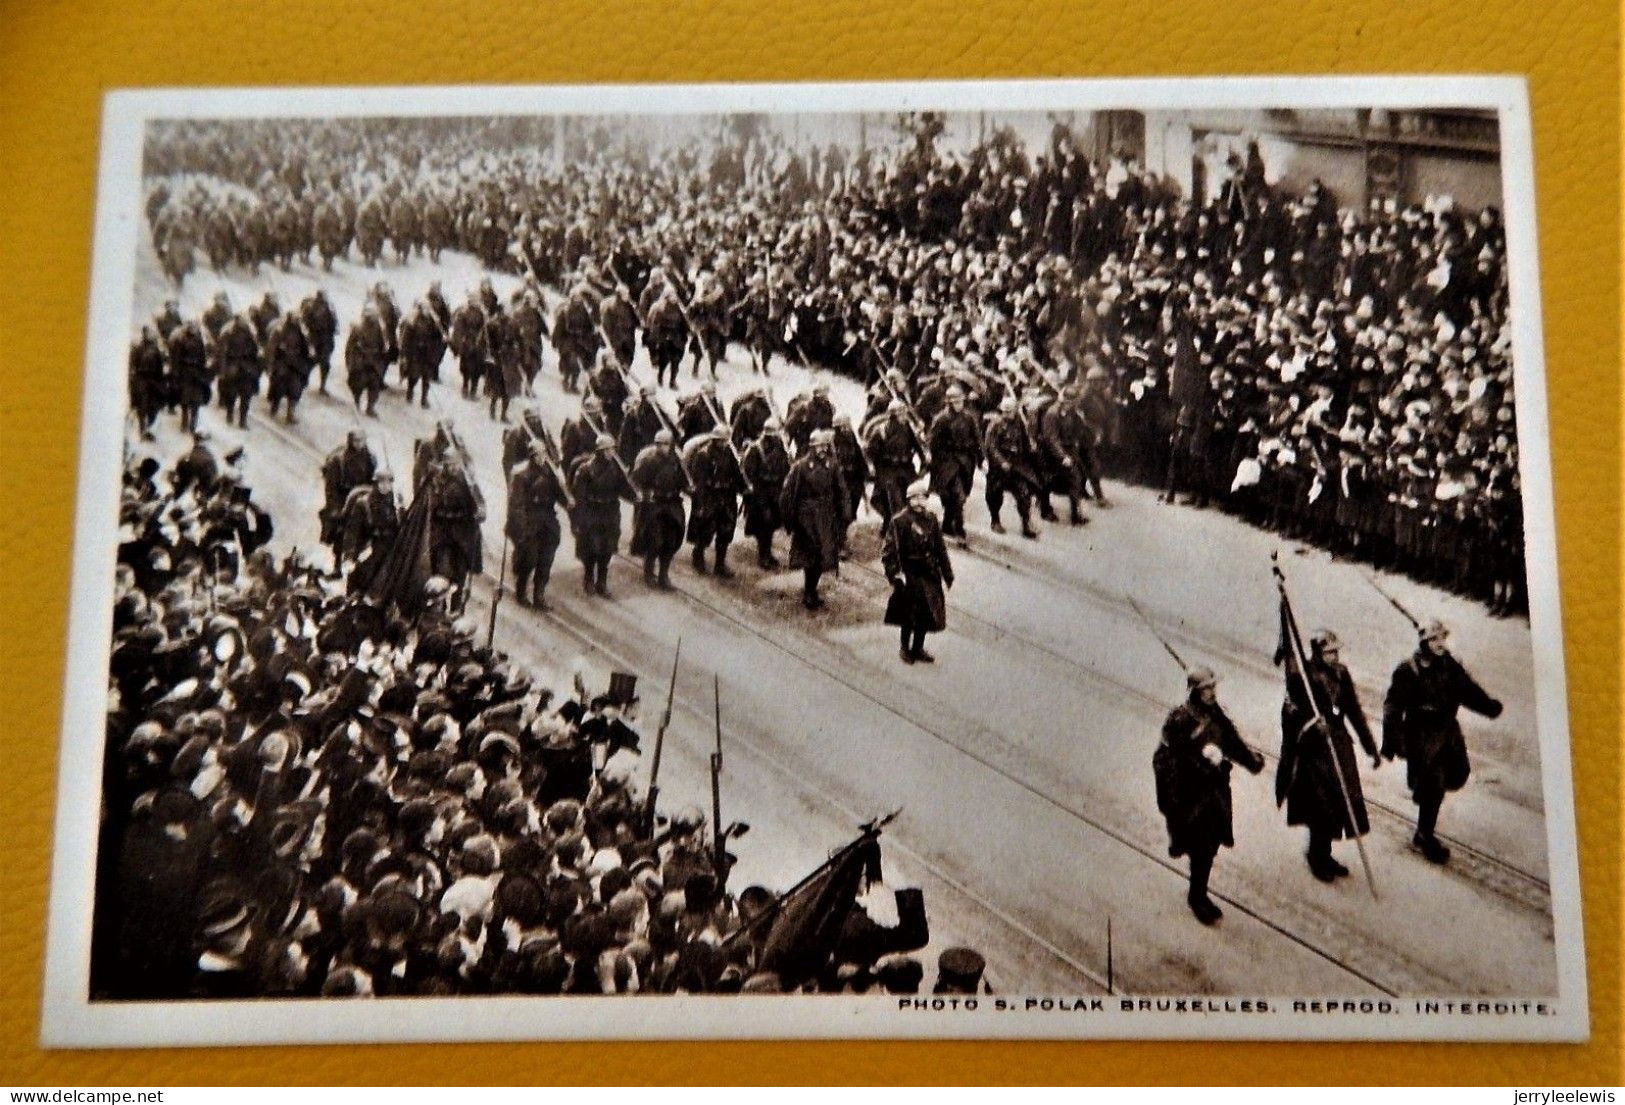 BRUXELLES - CARNET DE 10 CARTES - Rentrée triomphale du Roi Albert et des armées alliées le 22/11/1918